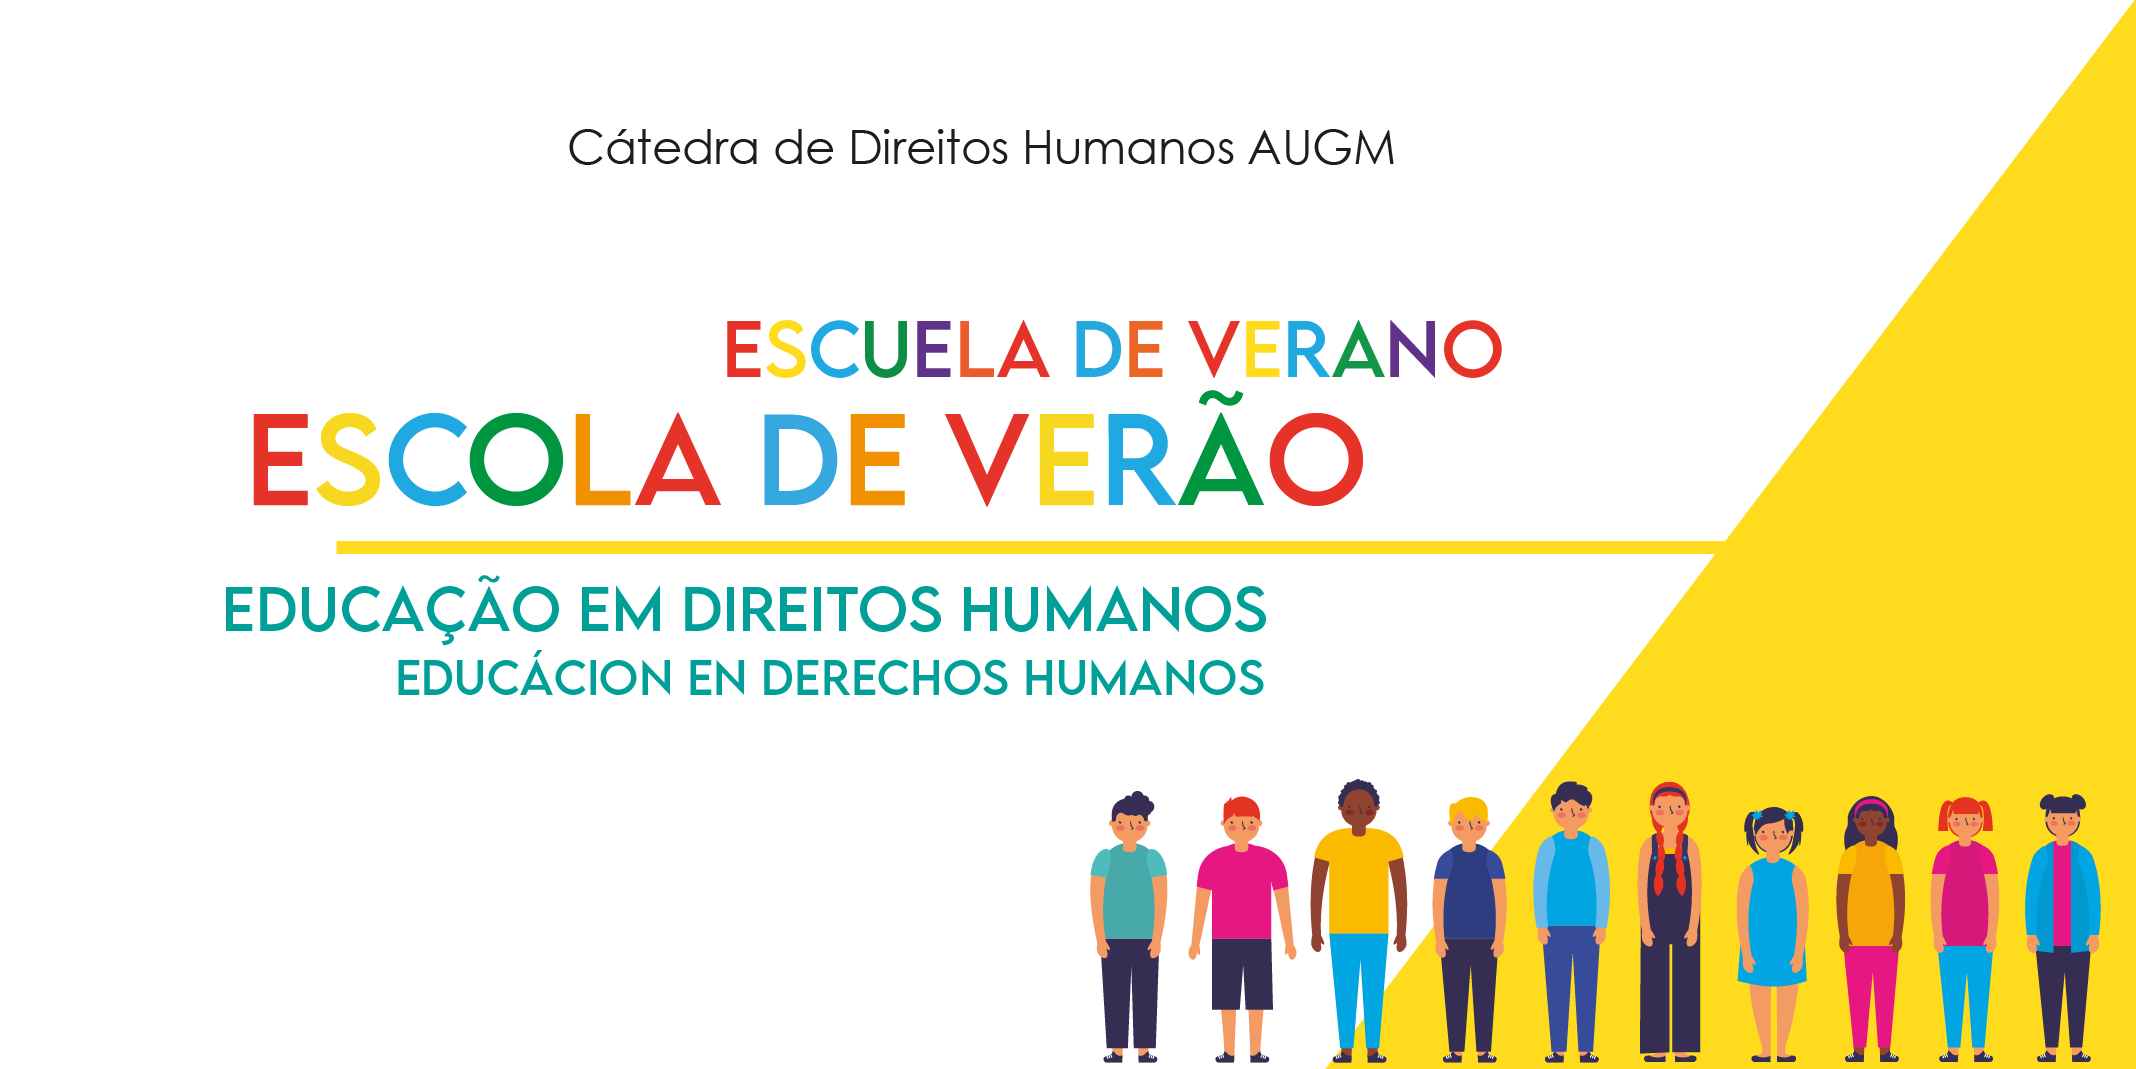 Identidade visual da Escola de Verão - Educação em Direitos Humanos | Comunicação Proex UFMG